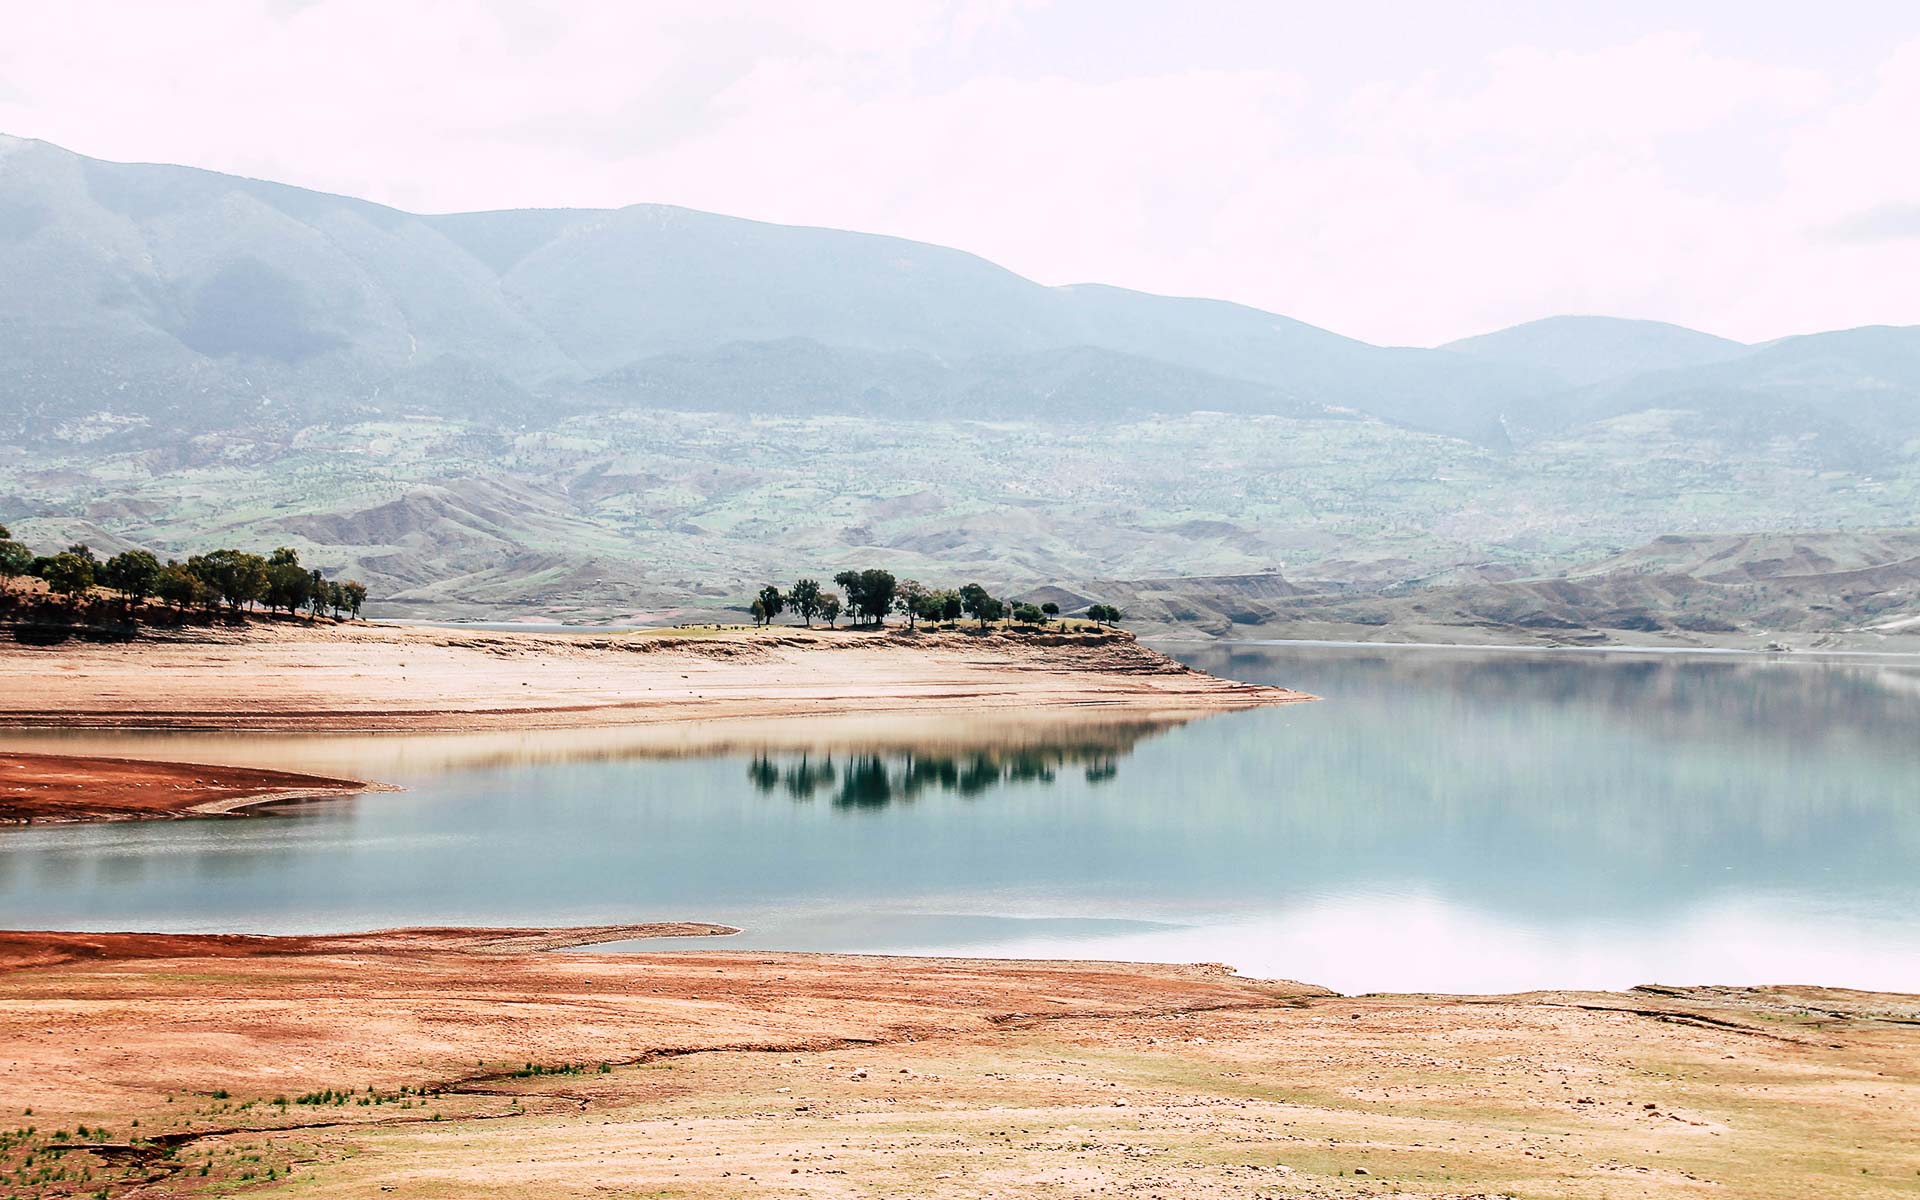 Das Ufer von Marokkos Staudamm Bin El Ouidane leuchtet in verschiedenen Rottönen, das Wasser spiegelt sich ruhig und klar in der Sonne, im Hintergrund liegen im Dunst grünbewachsene Hügel.